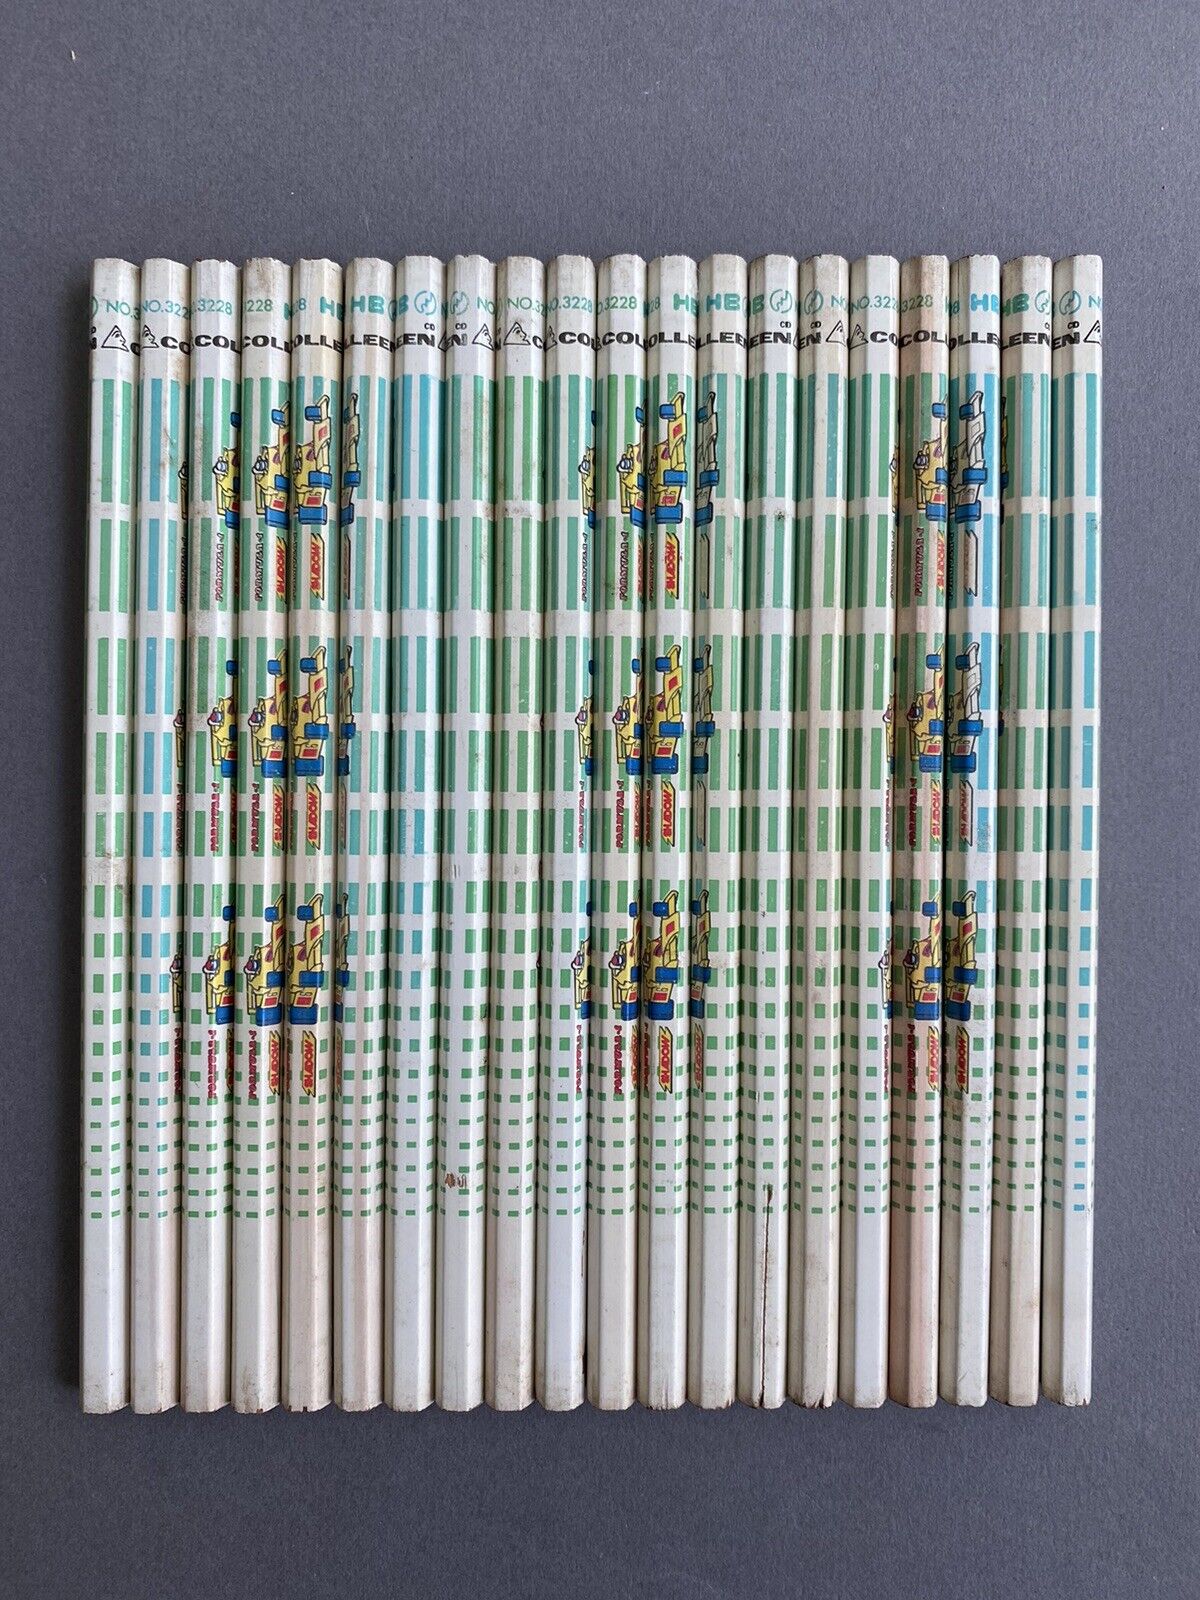 20 NOS unused Japanese vintage pencils Colleen 3228 HB JIS F1 Shadow